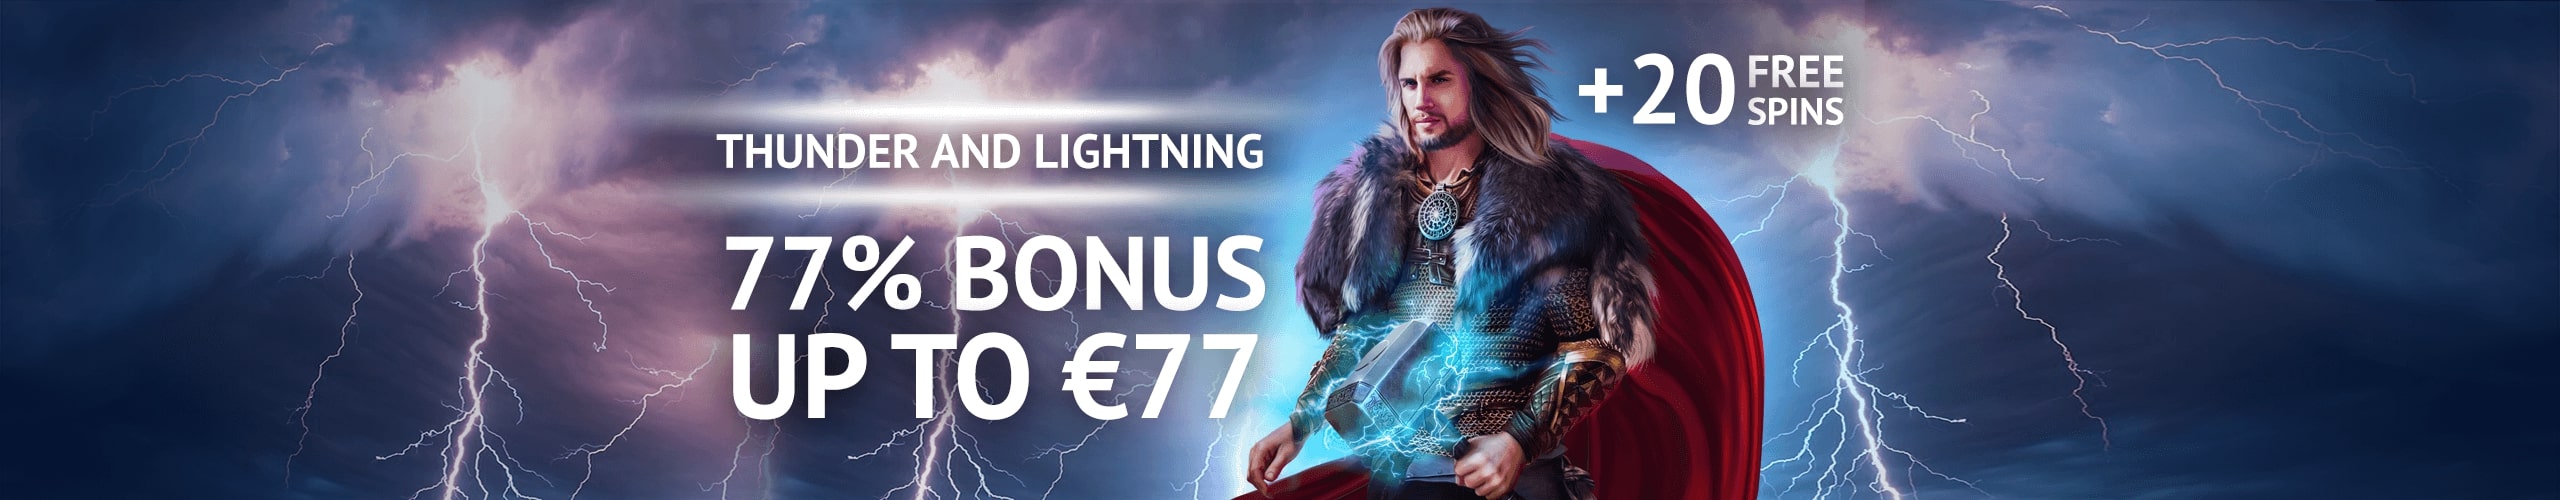 Thunder and Lightning Bonus